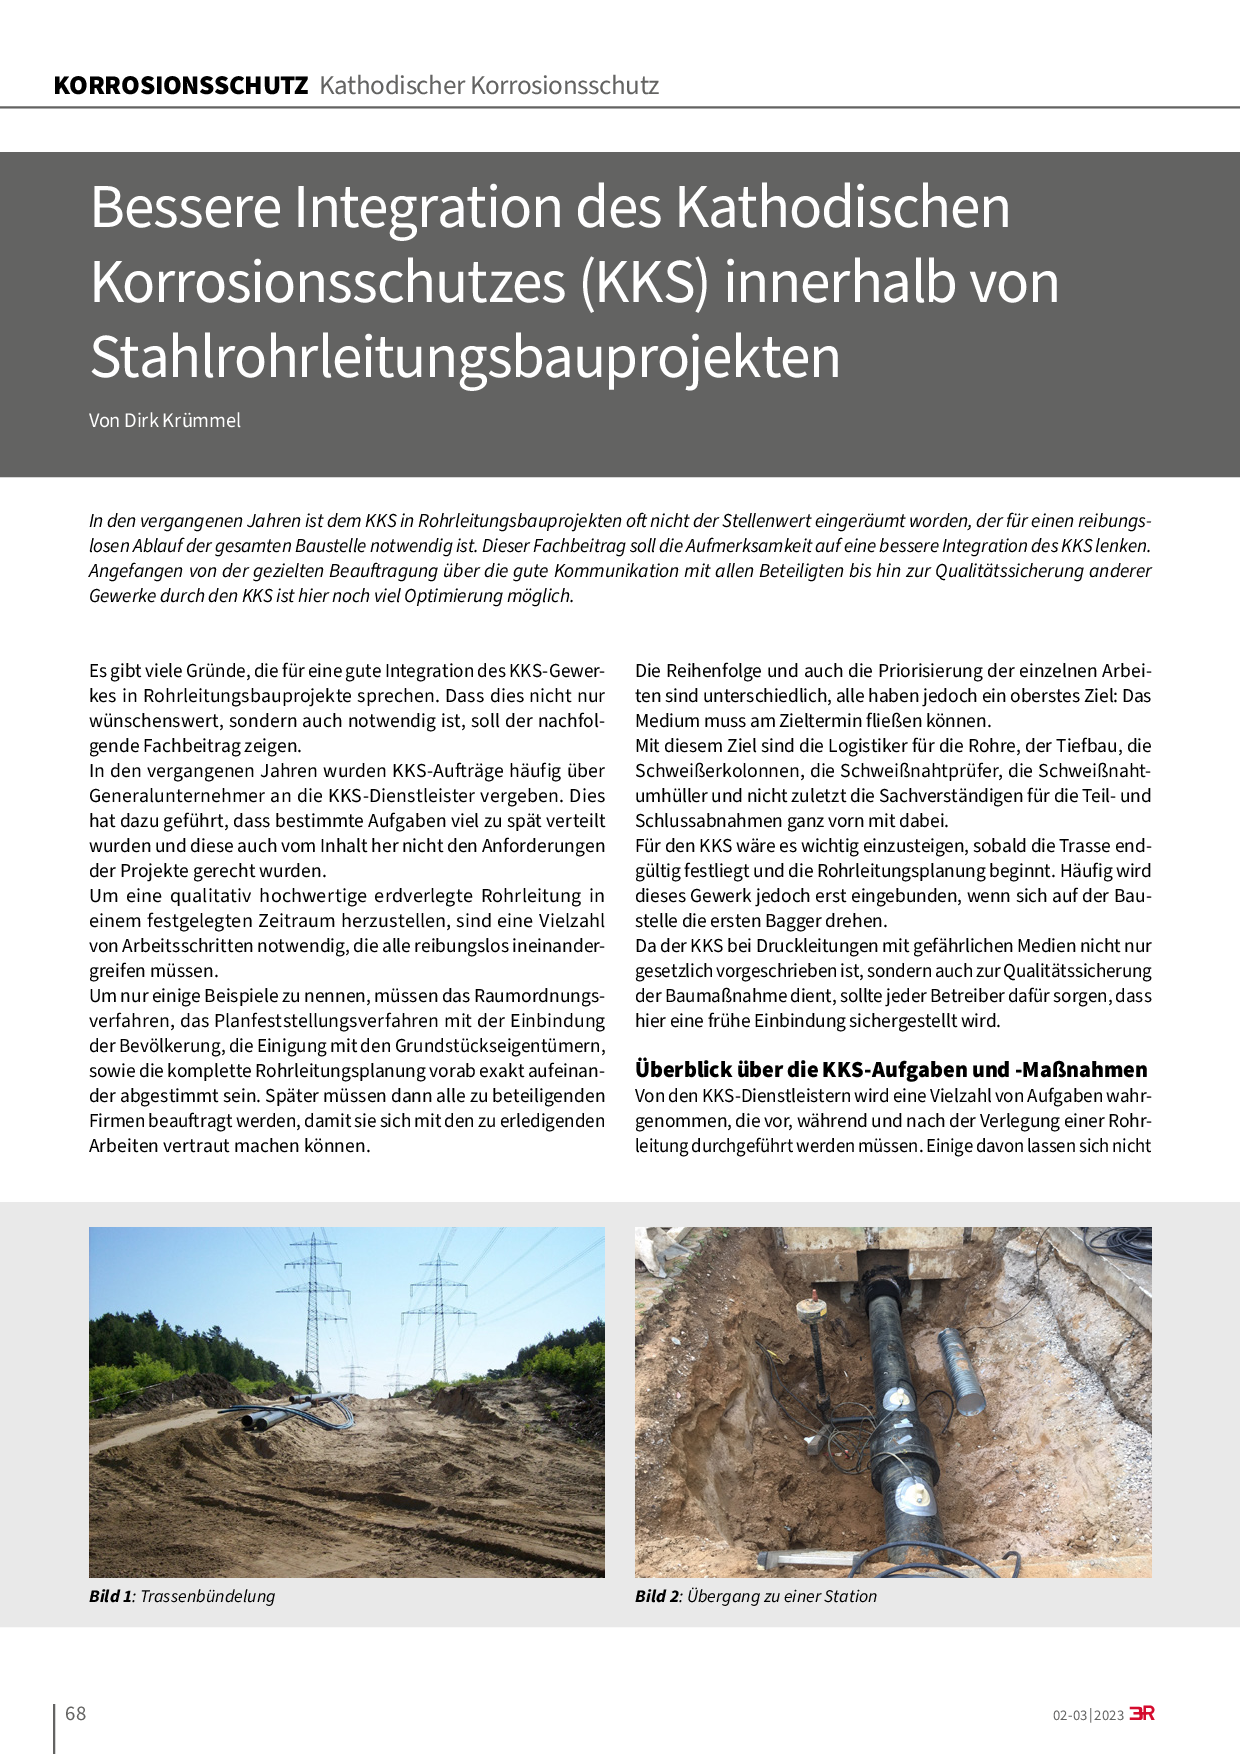 Bessere Integration des Kathodischen Korrosionsschutzes (KKS) innerhalb von Stahlrohrleitungsbauprojekten